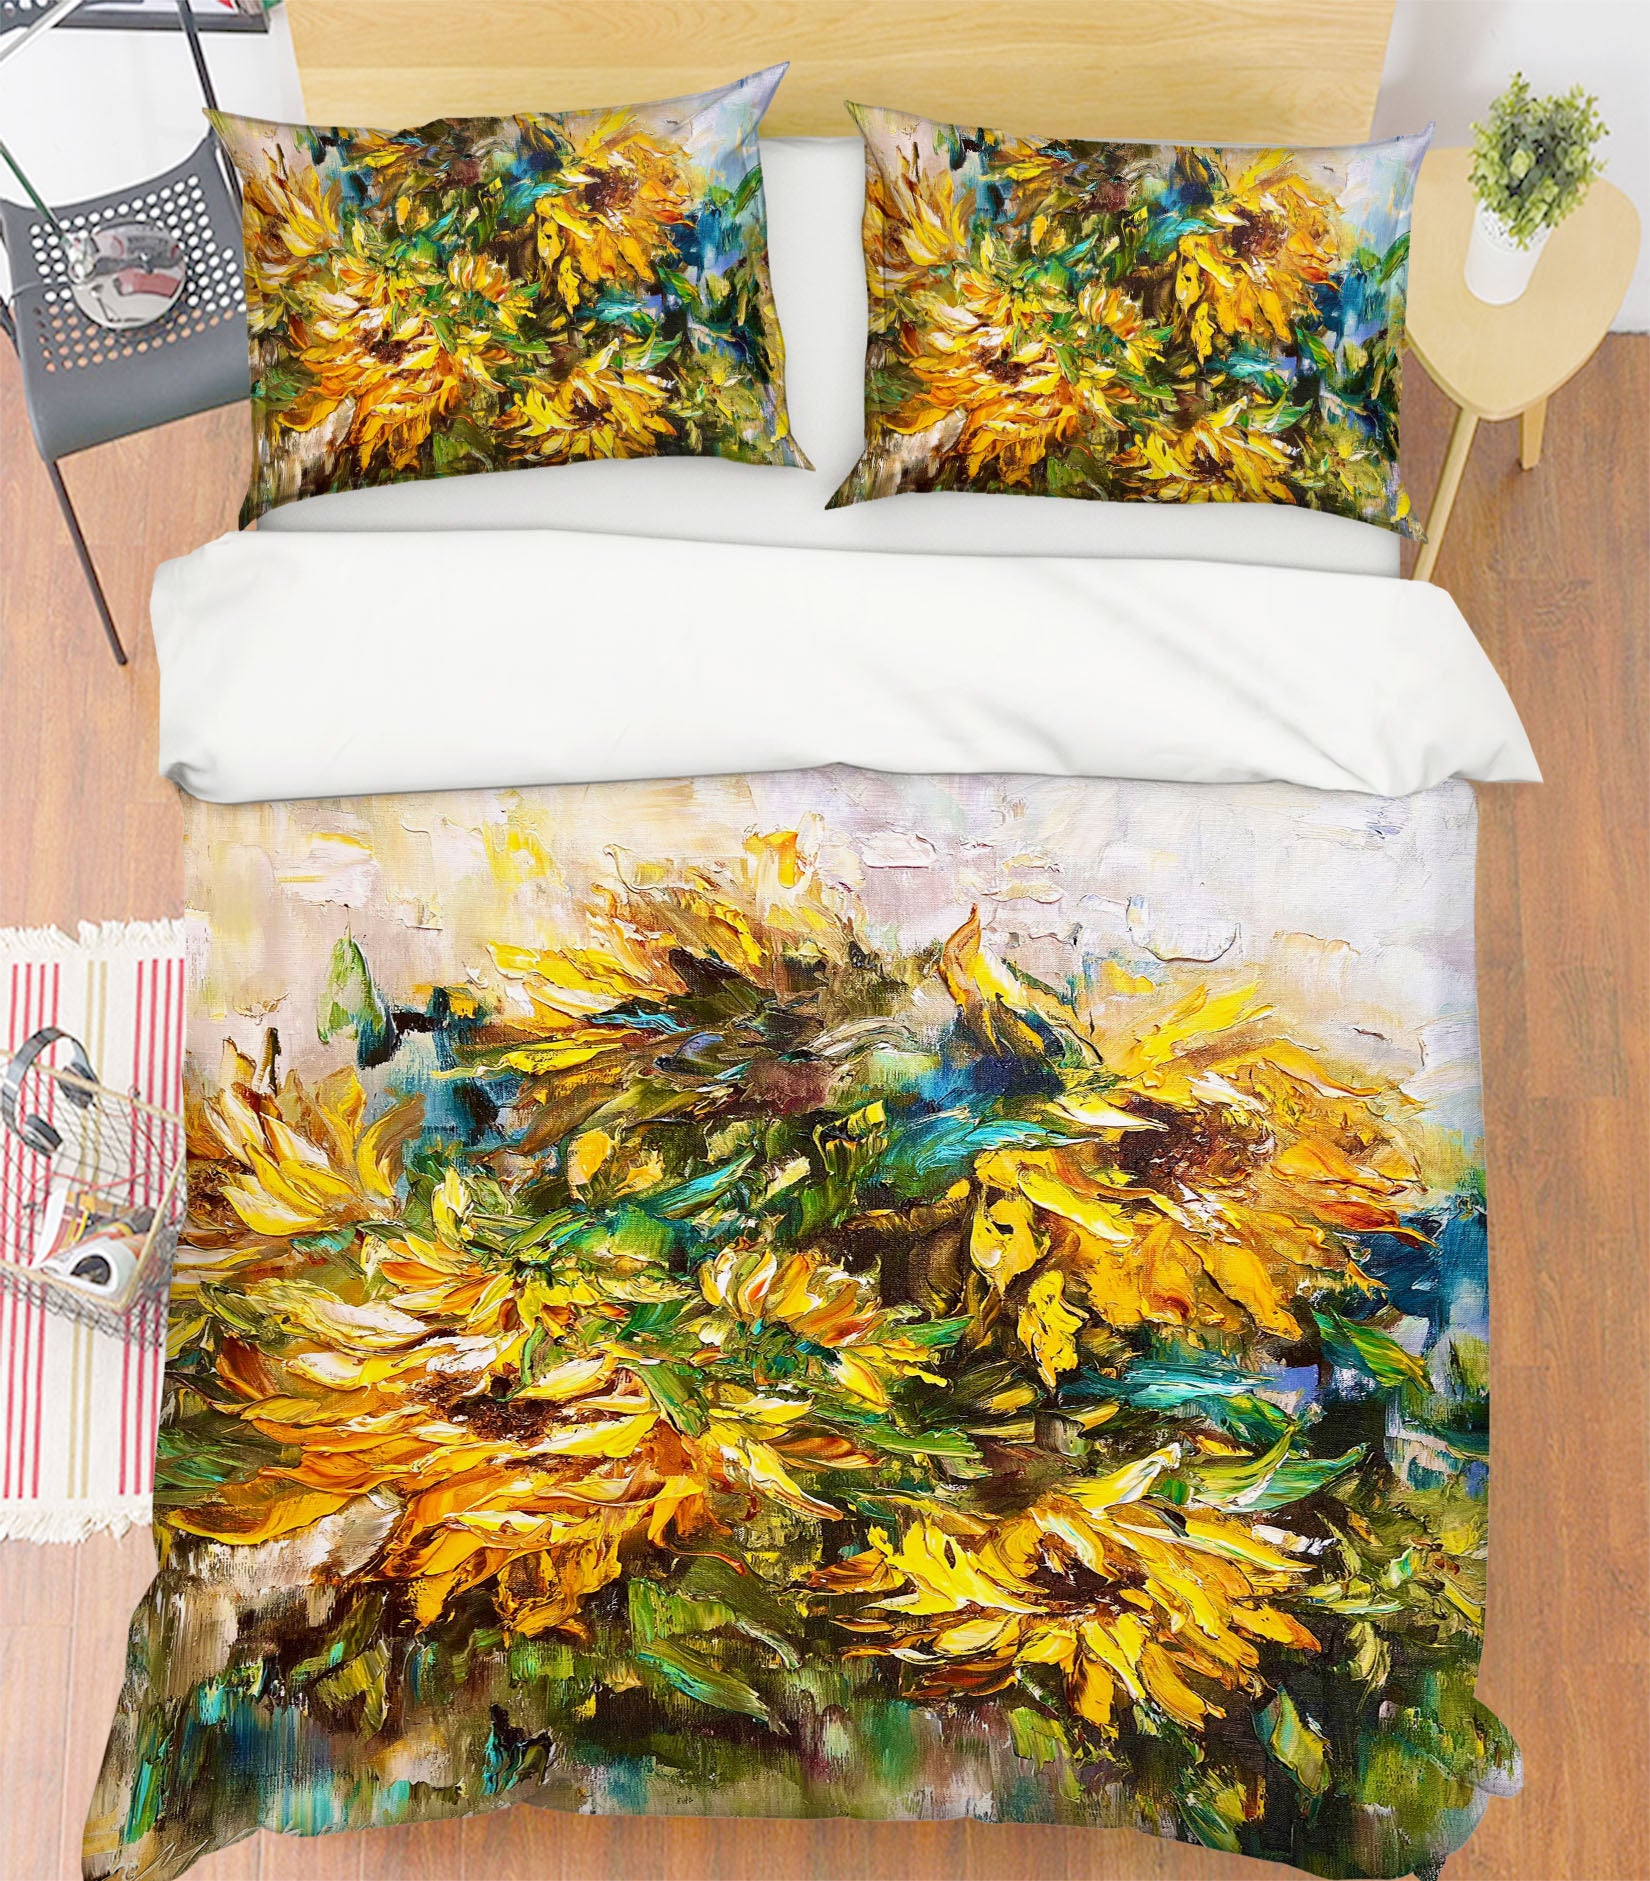 3D Yellow Flower 3802 Skromova Marina Bedding Bed Pillowcases Quilt Cover Duvet Cover